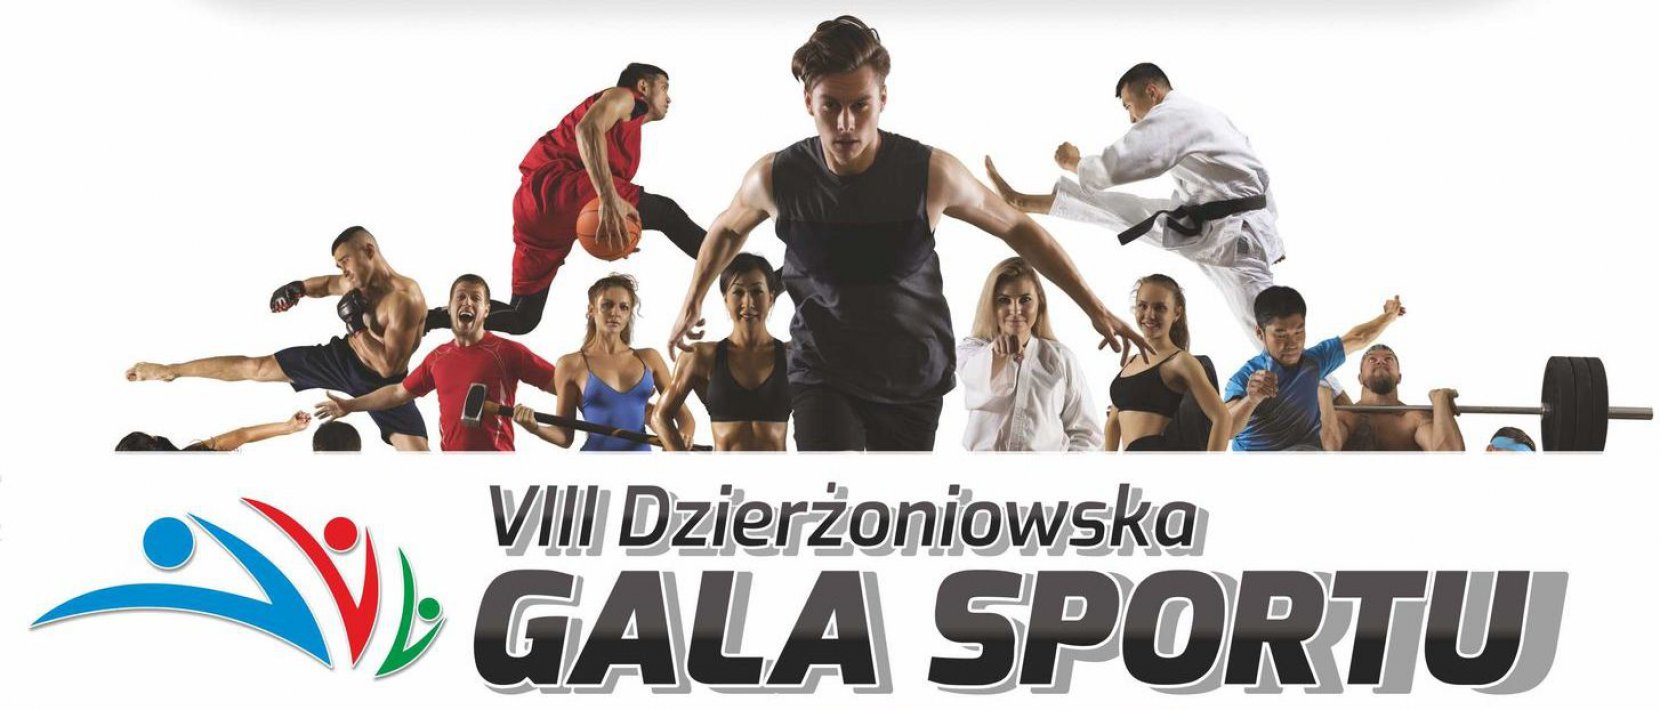 Napis Gala Spotru na białym tle i zdjęcia sportowców z roznych dyscyplin